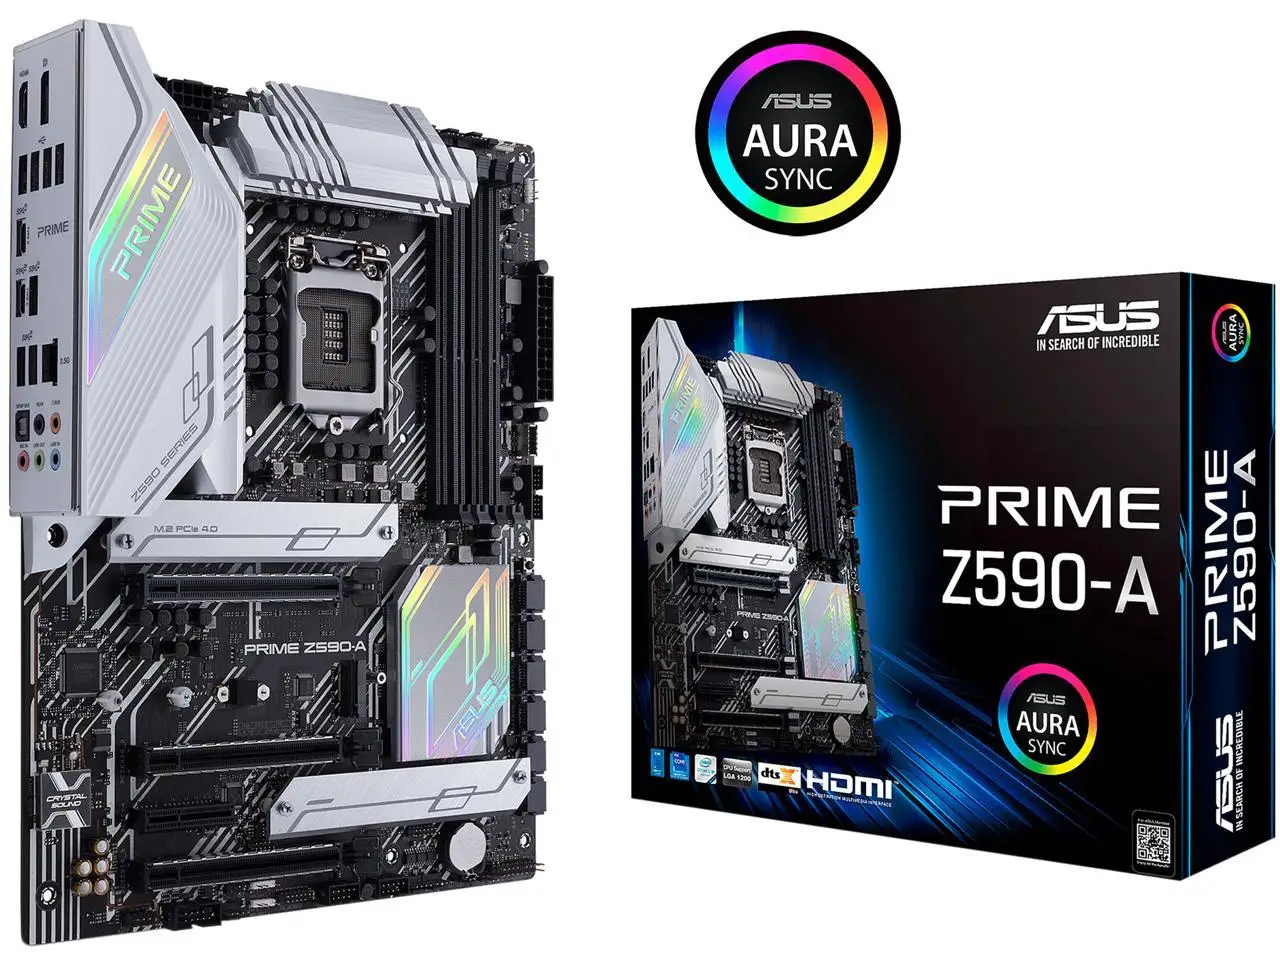 

Z590 Motherboard LGA 1200 Motherboard Asus PRIME Z590-A DDR4 128GB Intel Z590 USB3.2 PCI-E 4.0 3×M.2 ATX For 11/10th gen Core